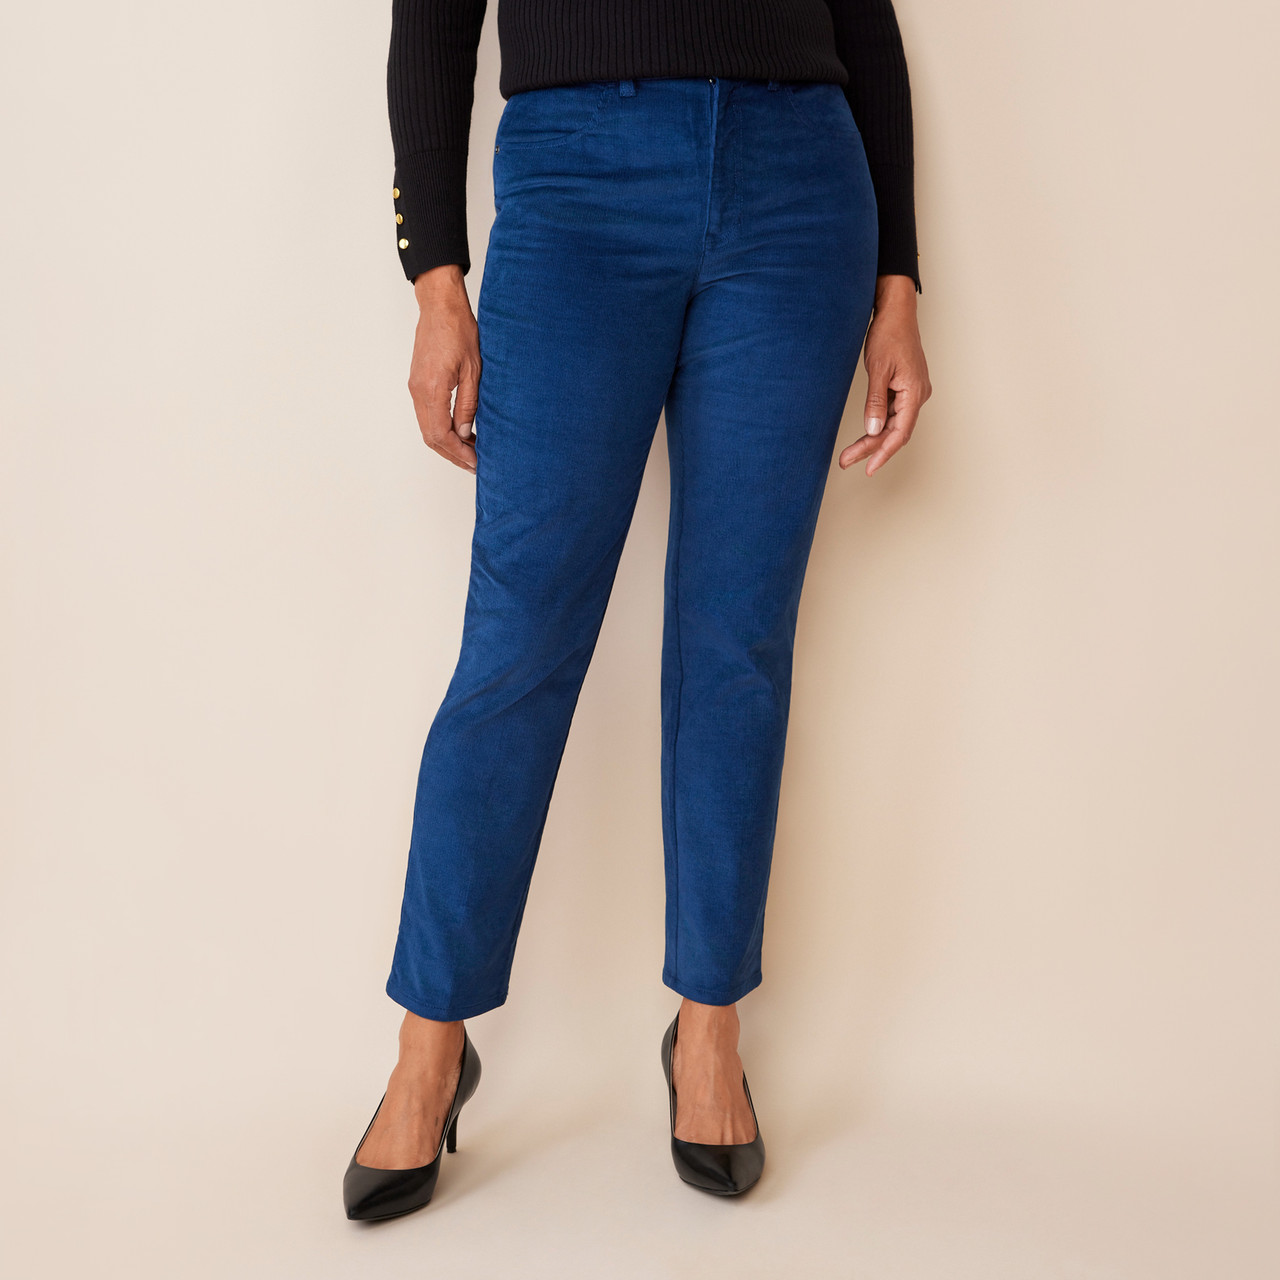 Corduroy pants for women, Buy online